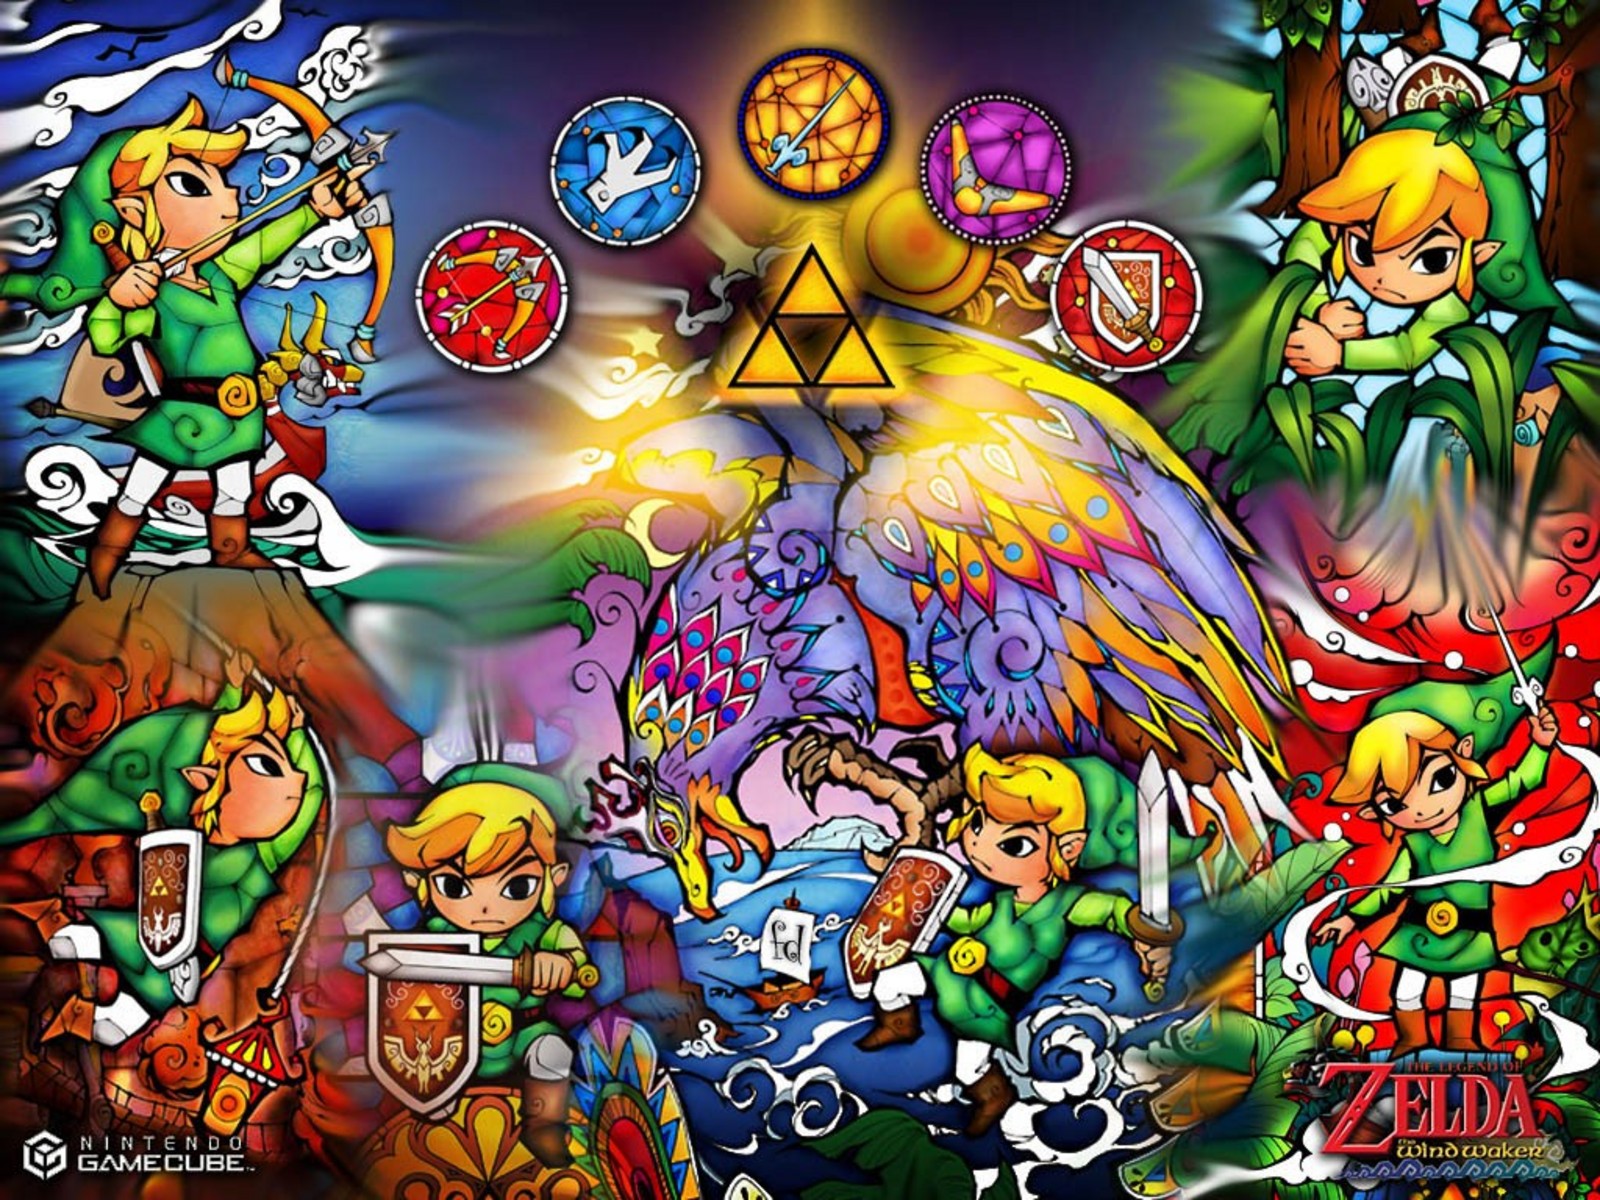 The Legend of Zelda: The Wind Waker Wallpapers